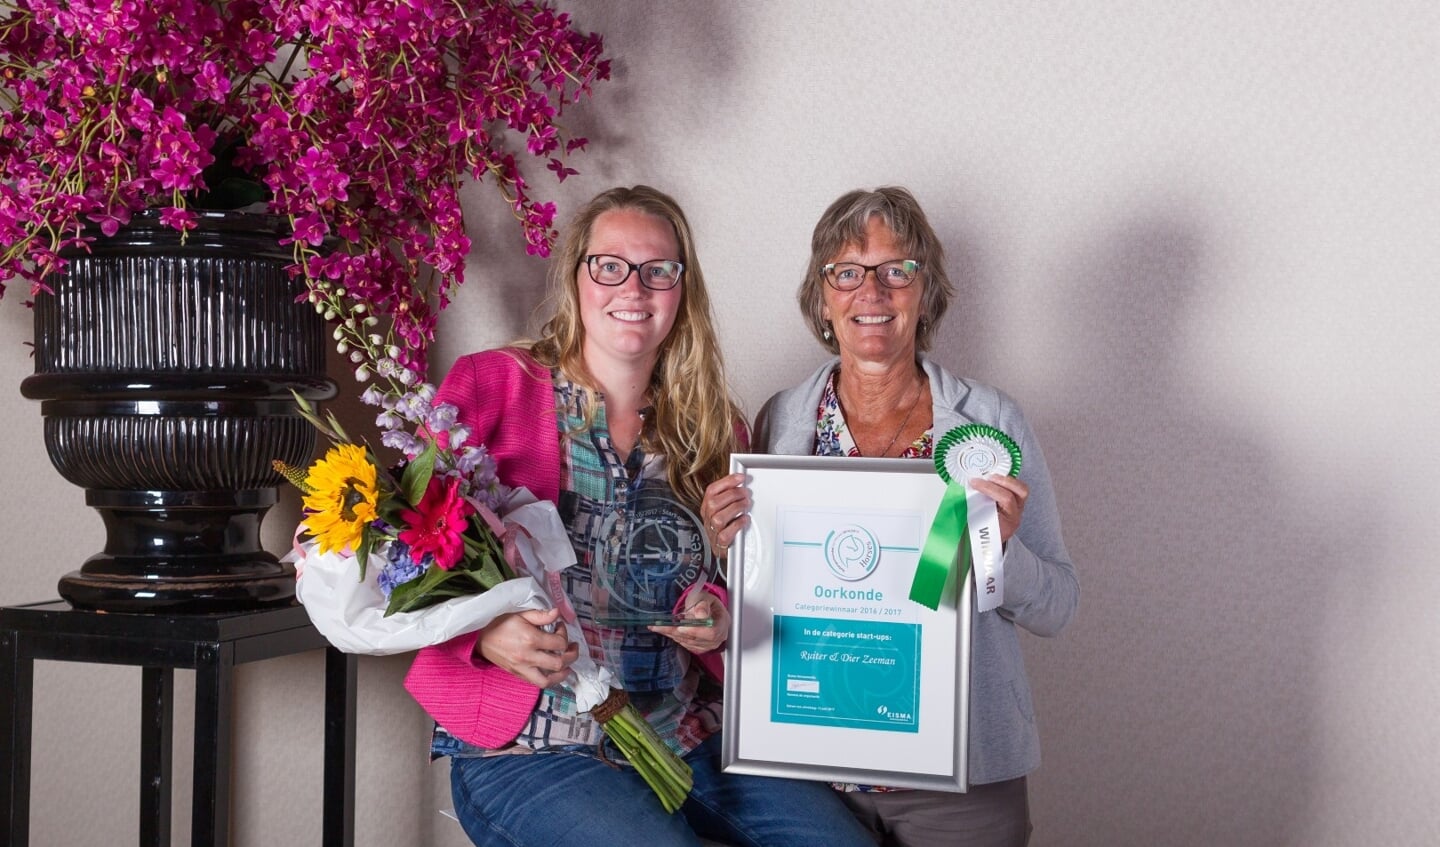 Start-up Nicole Ros van Ruiter & Dier Zeeman met haar moeder Guda Zeeman (Large)